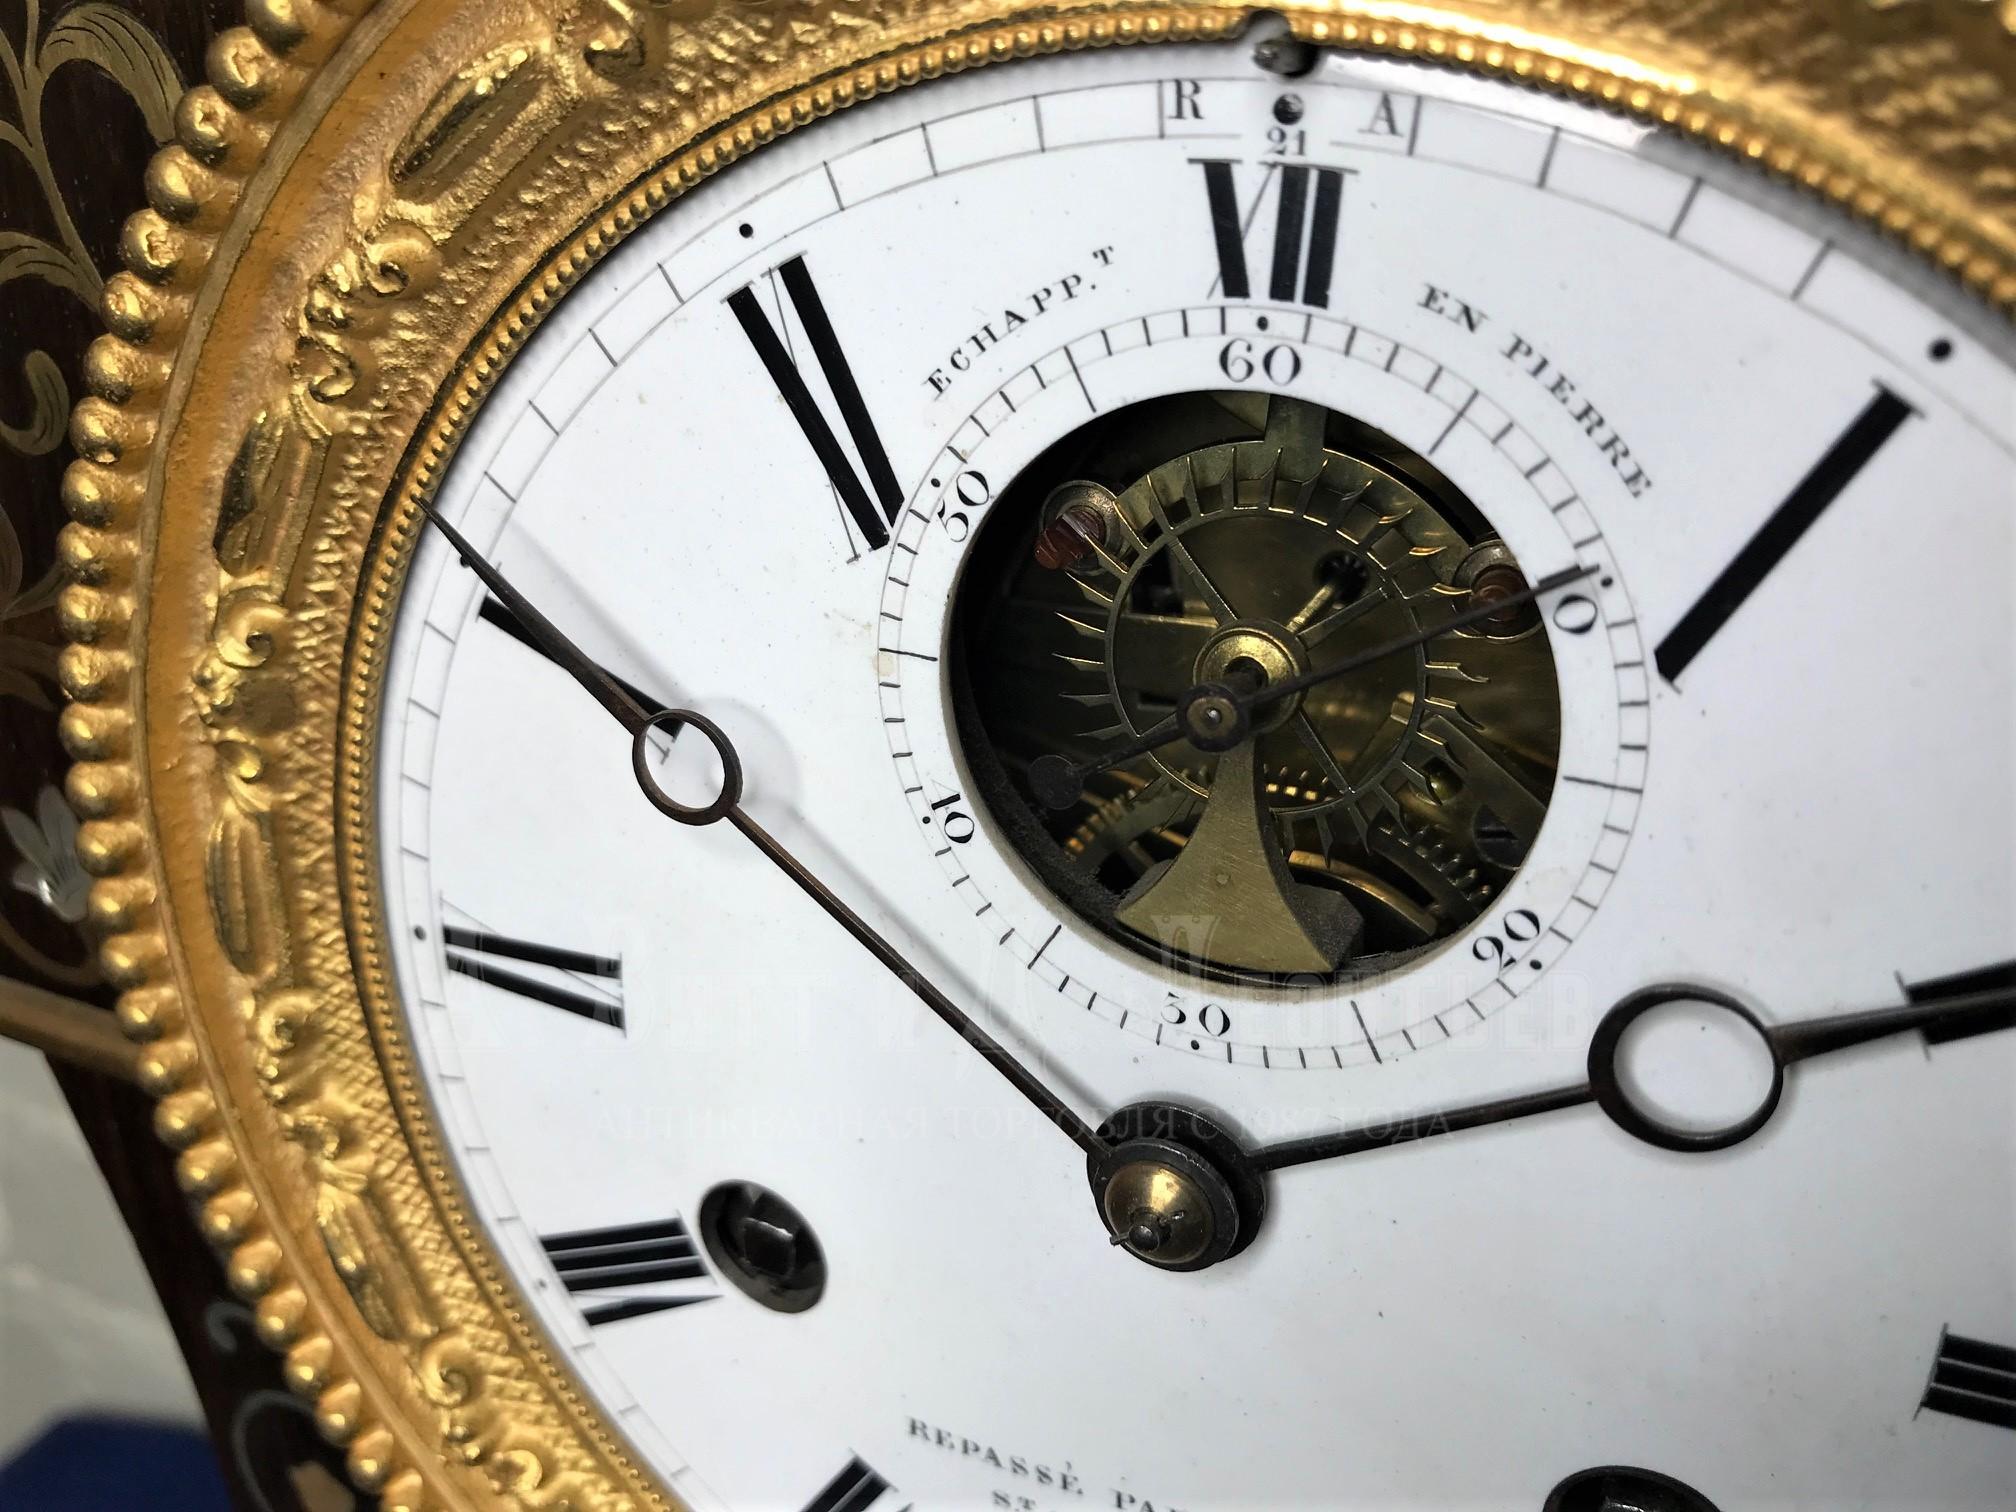 Инкрустированные часы Крейц антикварные каминные деревянные русские старинные